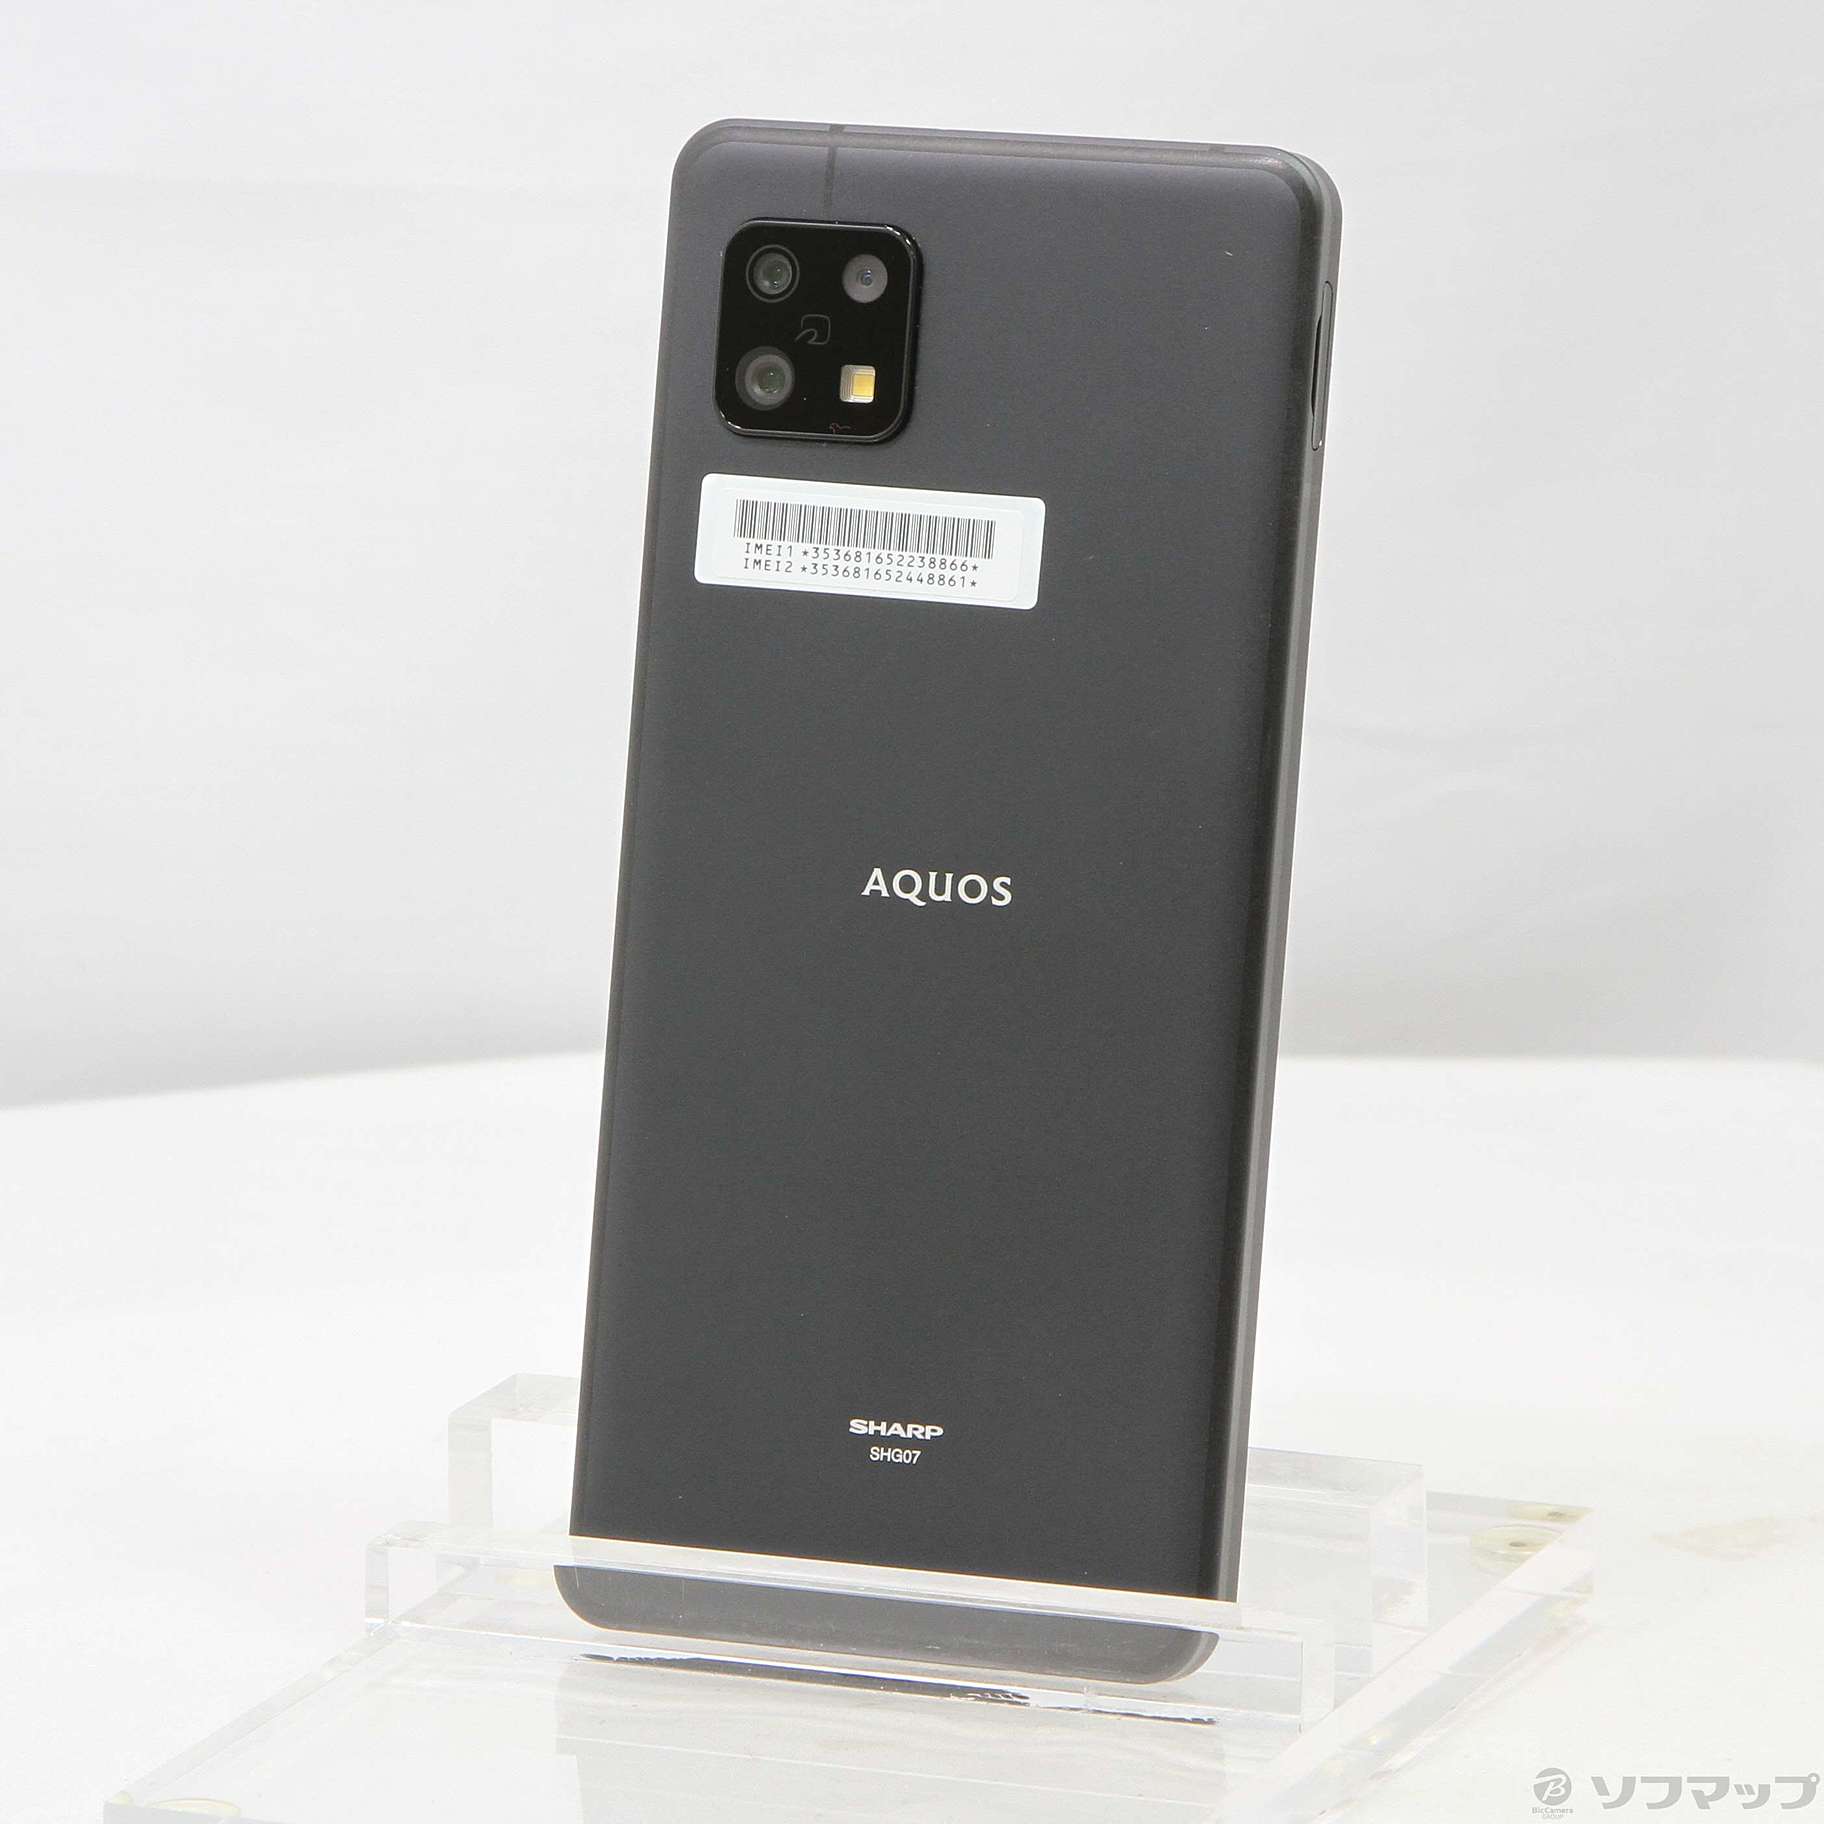 中古】セール対象品 AQUOS sense6s J:COM 64GB ブラック SHG07 SIM